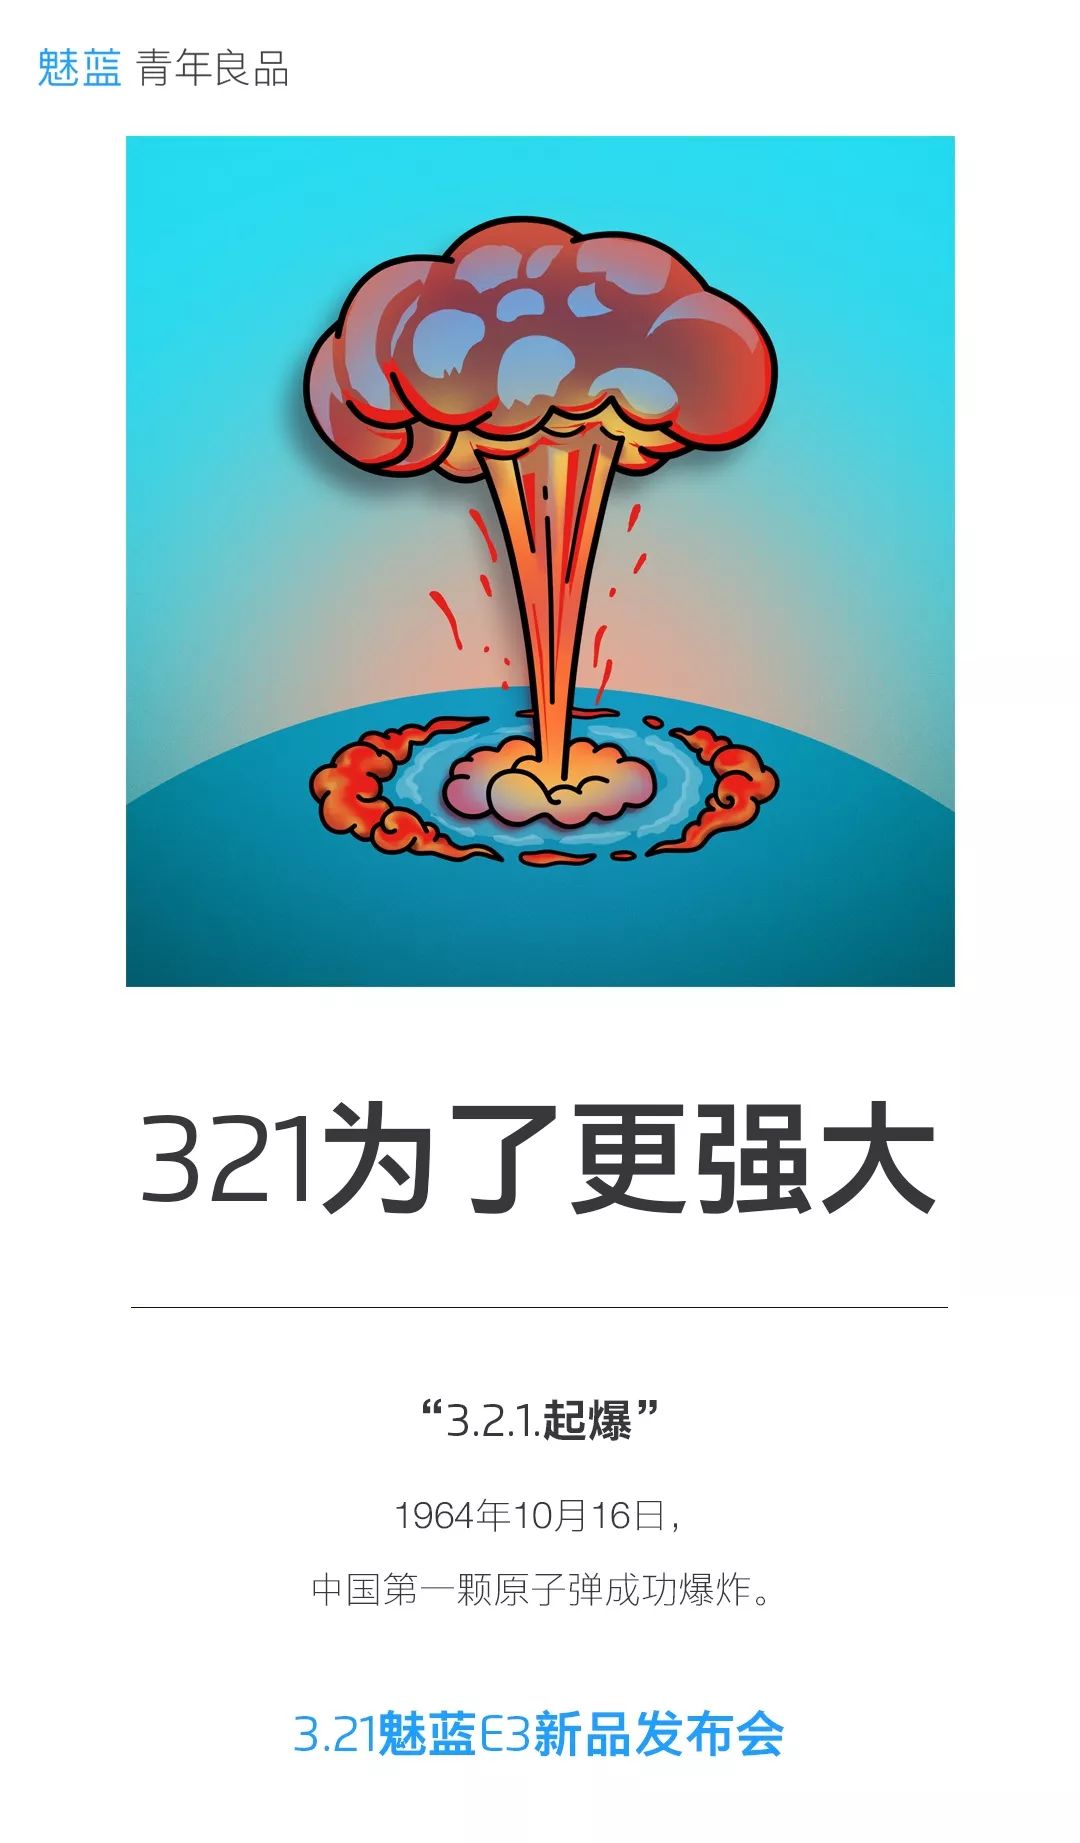 321 为了更强大丨1964 年 10 月 16 日,中国第一颗原子弹成功爆炸